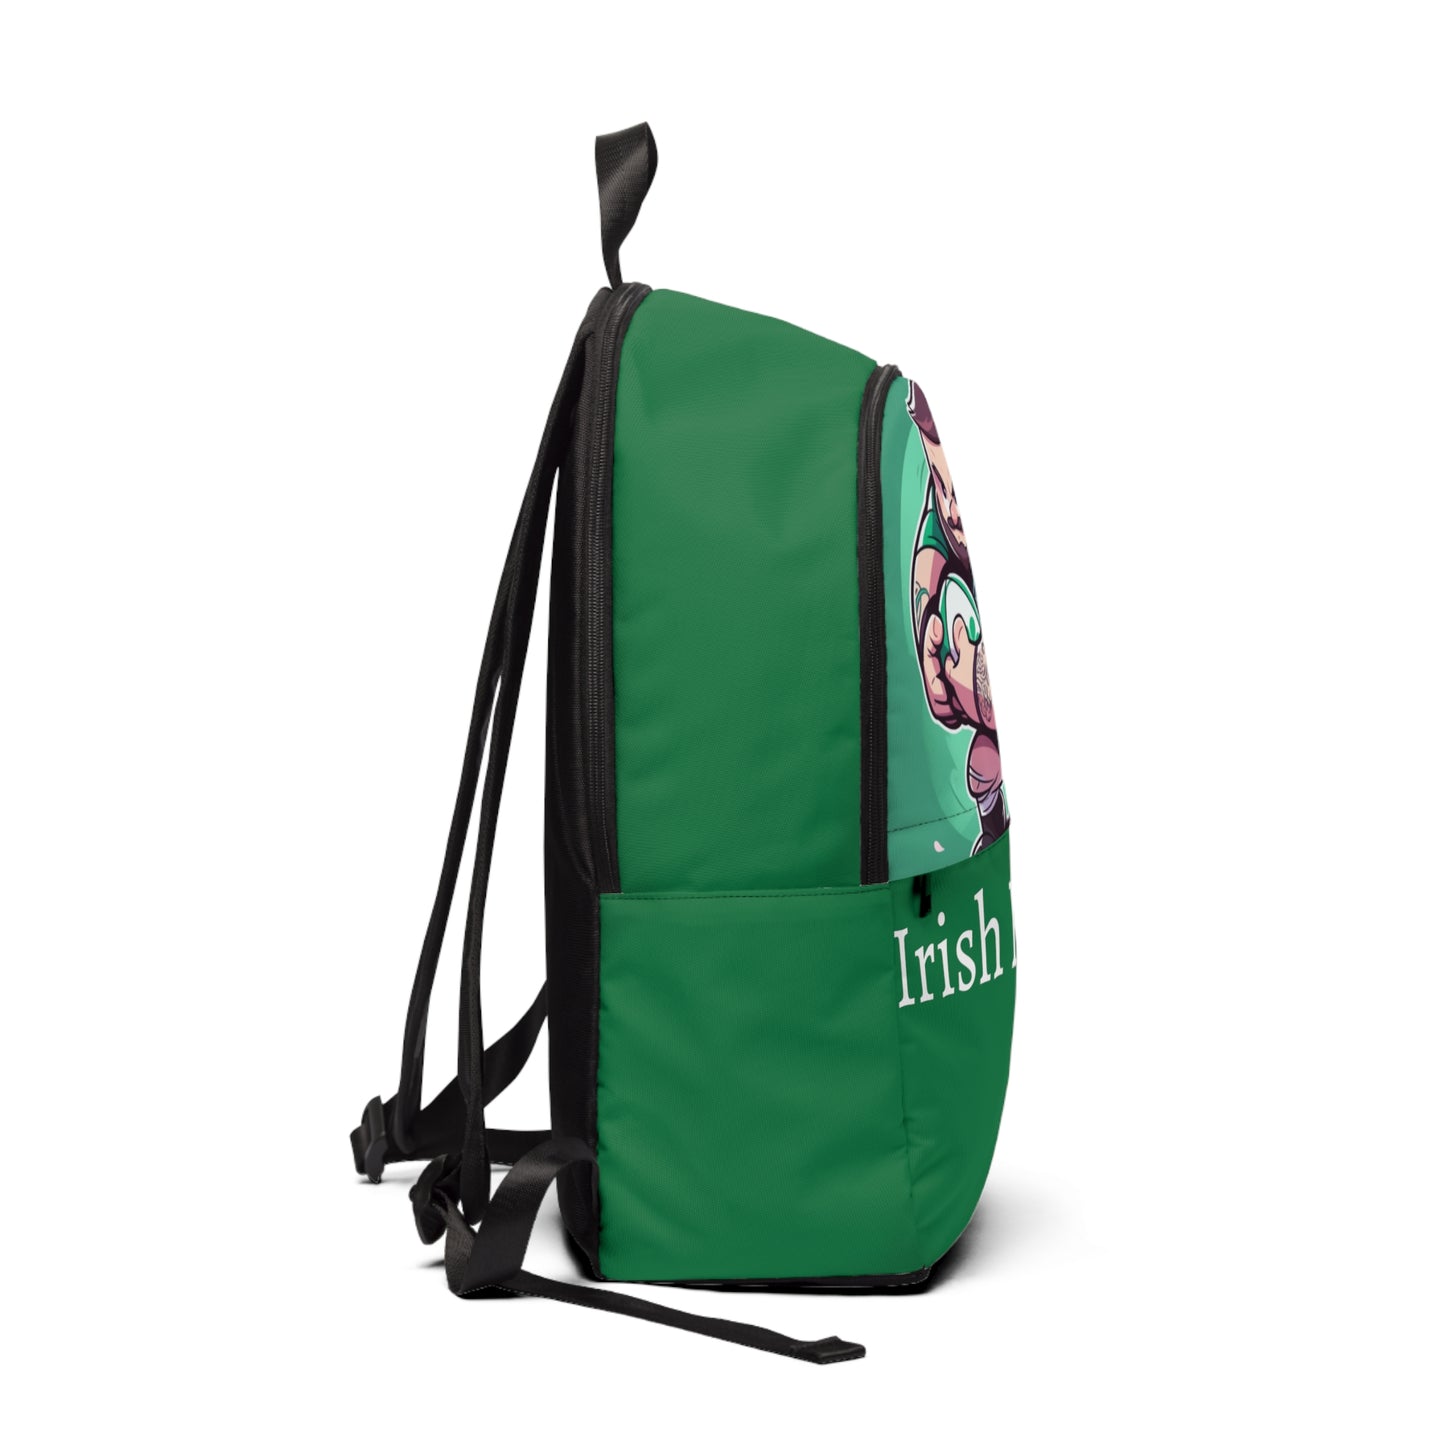 Irish Rugby backpack